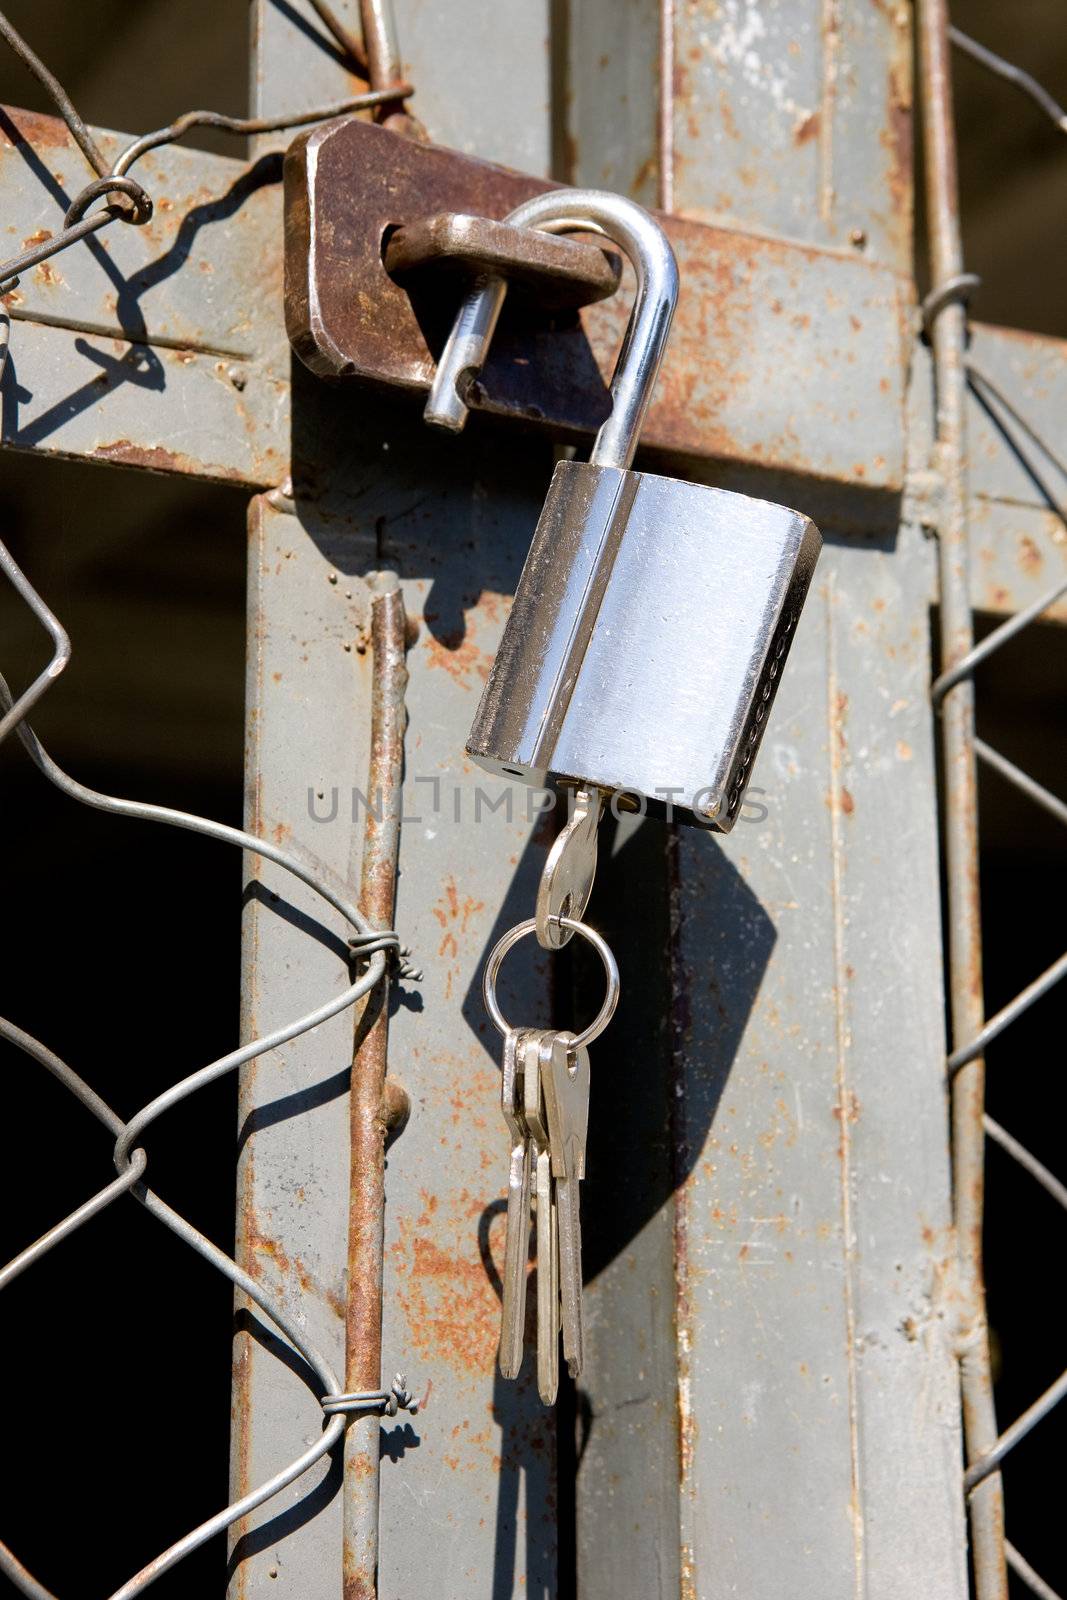 A heavy lock on a wire gate - open padlock with keys